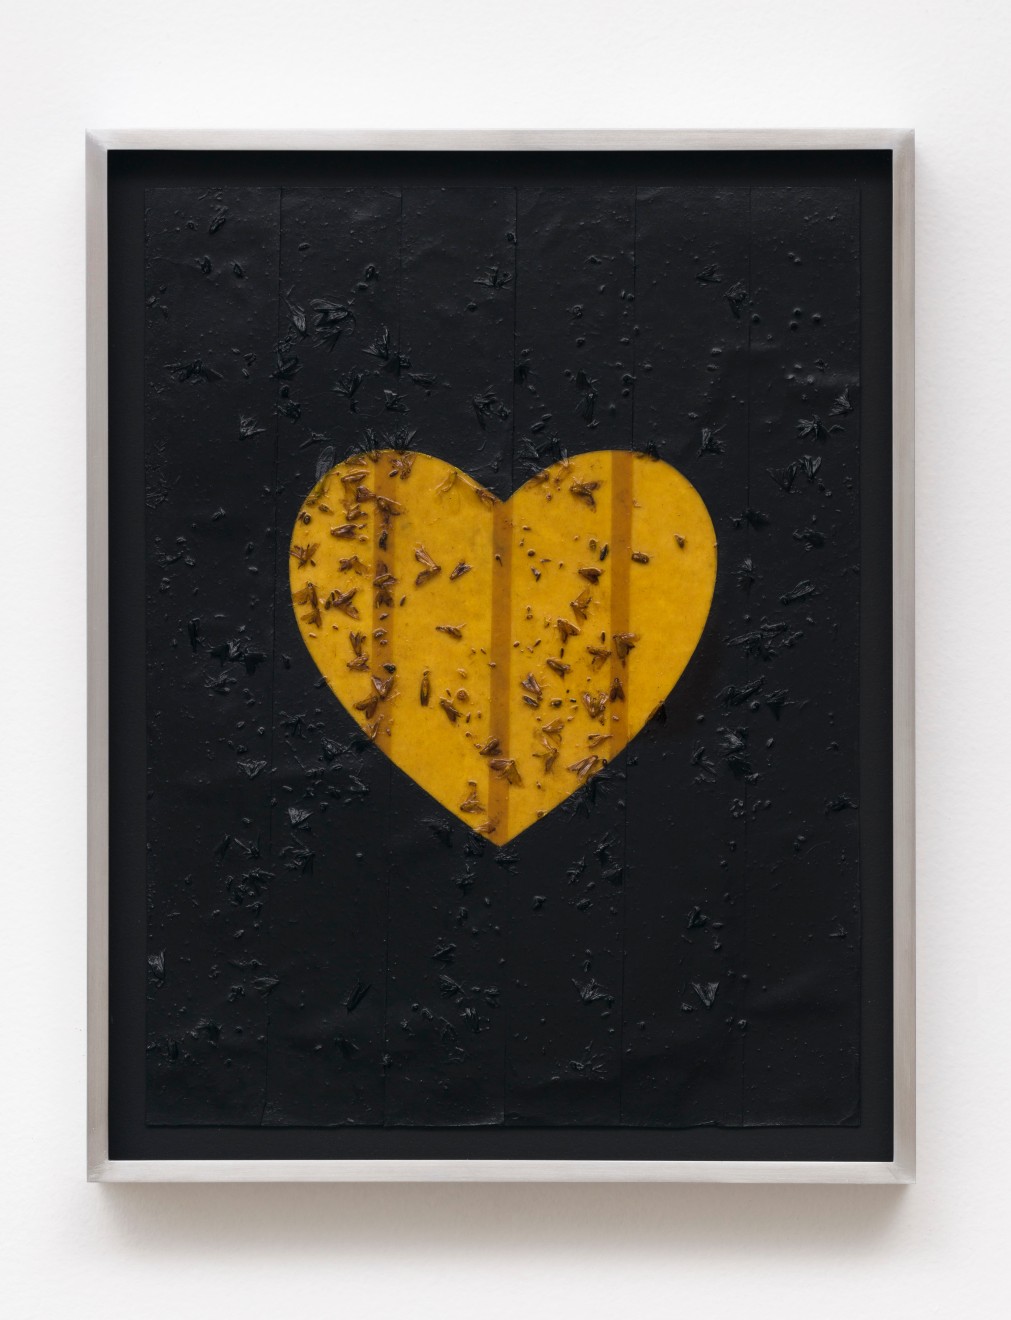 Linda Stark Fly Paper Heart, 2014